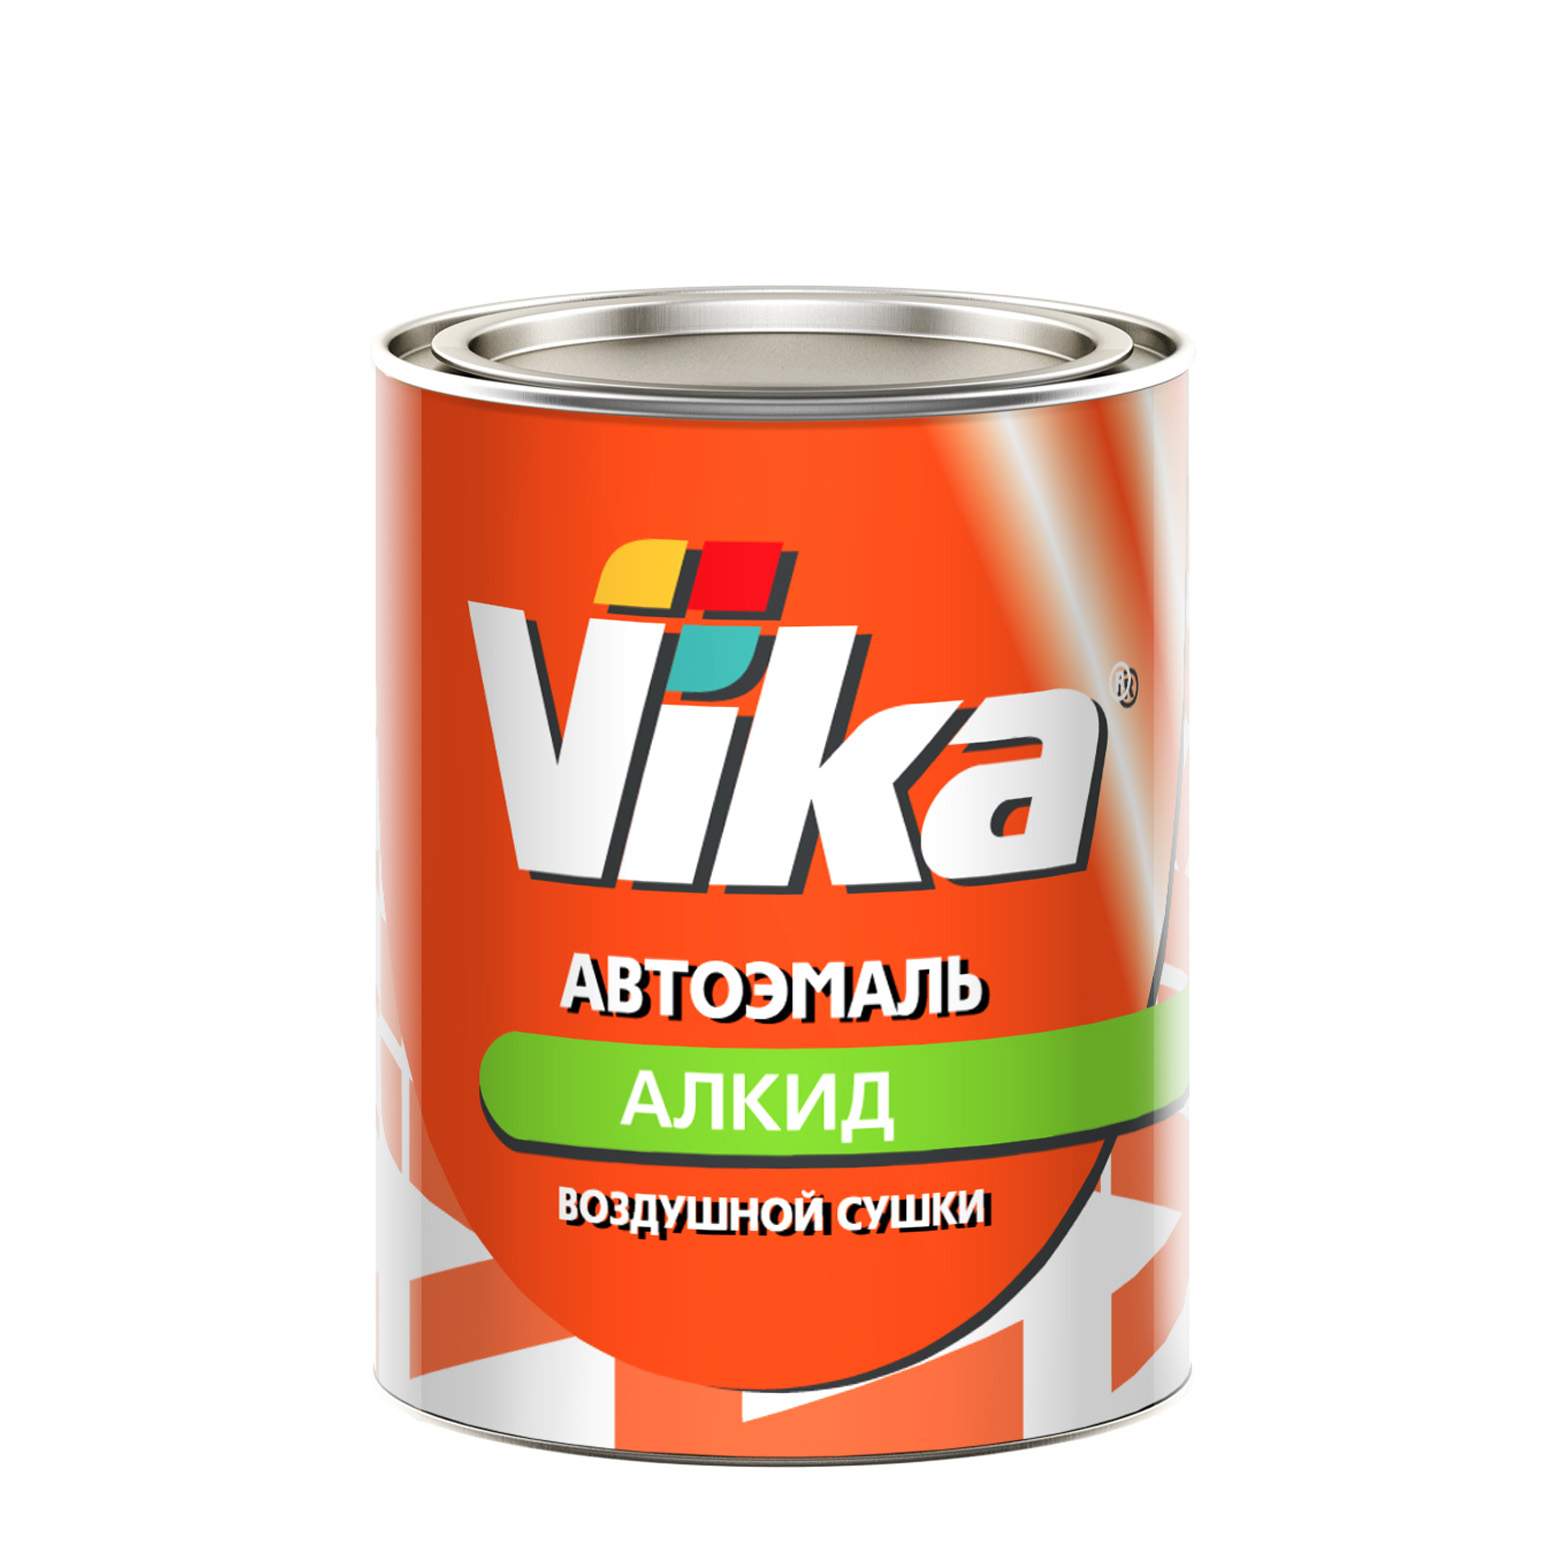 Фото 1 - Автоэмаль Vika-60, цвет 1035 Желтая алкидная глянцевая естественной сушки - 0,8 кг.